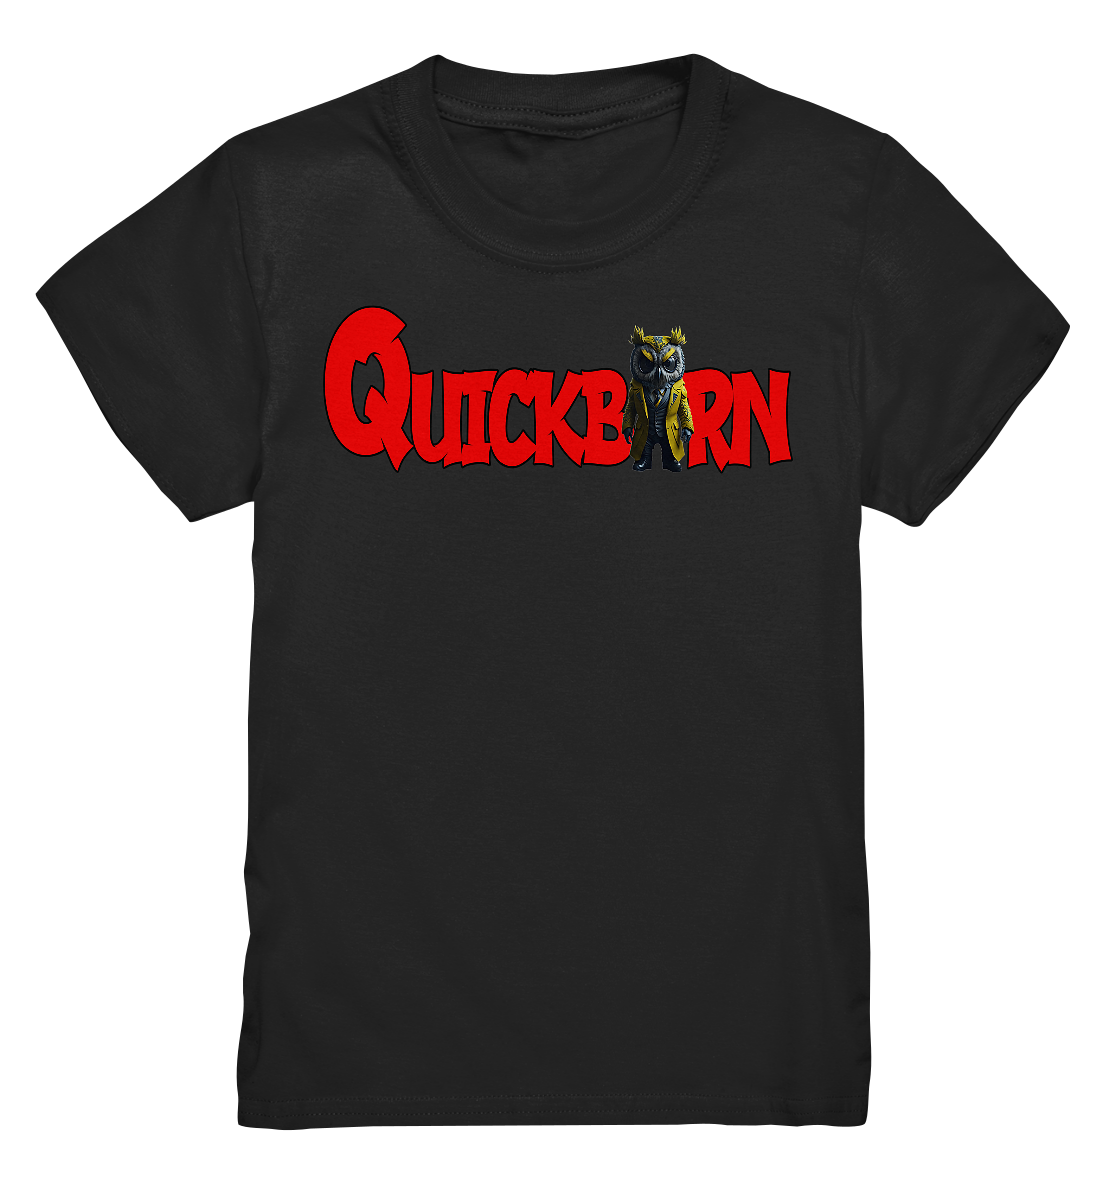 Kinder Shirt mit Quickborn Logo mit gelber Eule - Kids Premium Shirt